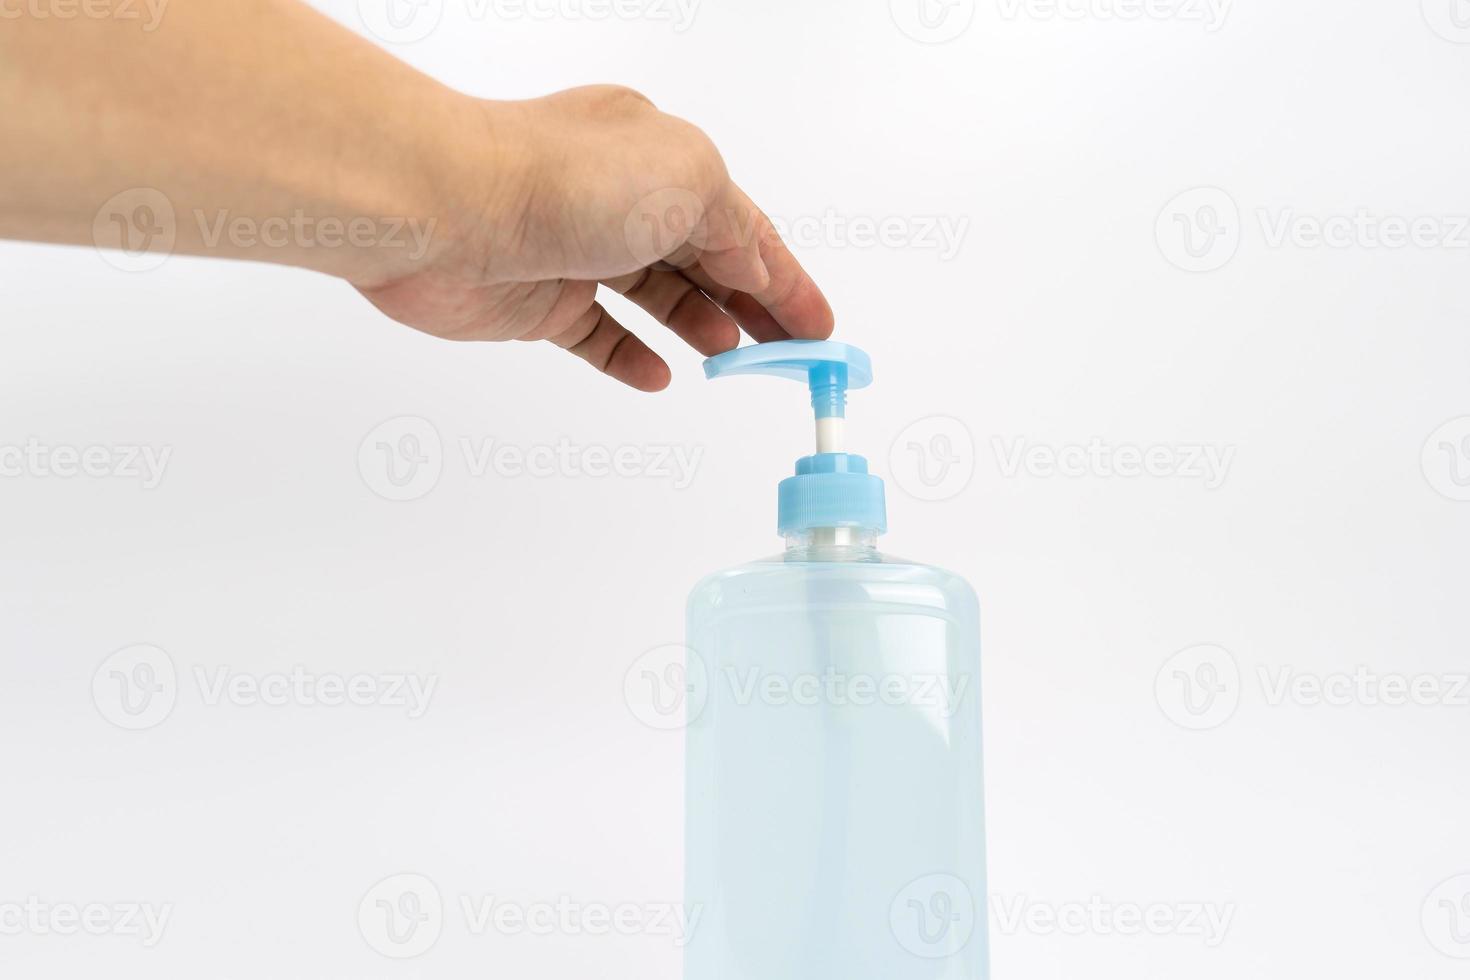 la mano asiática sostiene una botella de bomba de alcohol en gel y está lista para empujarla. es un objeto aislado en la pantalla blanca clara con luz de estudio. foto